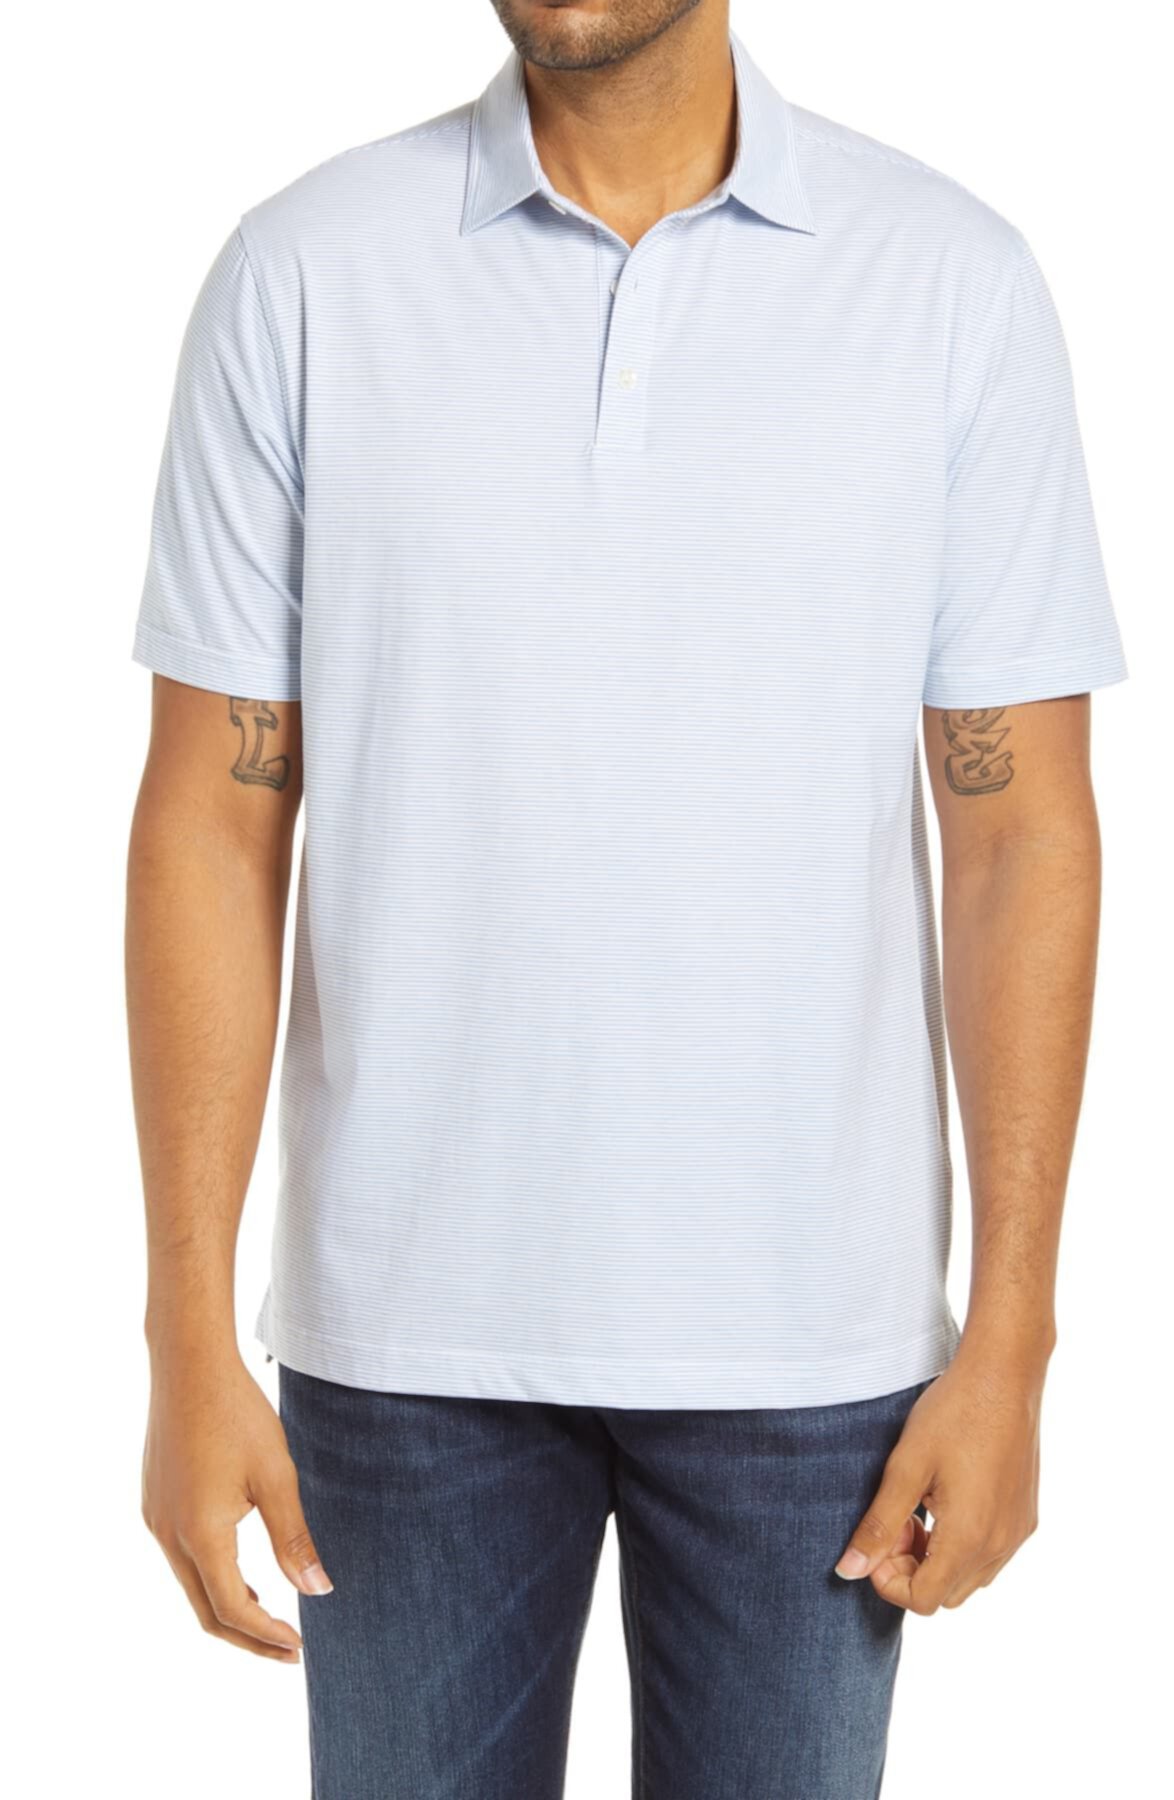 Мужская футболка-поло в полоску Crown Soft Biscayne Peter Millar